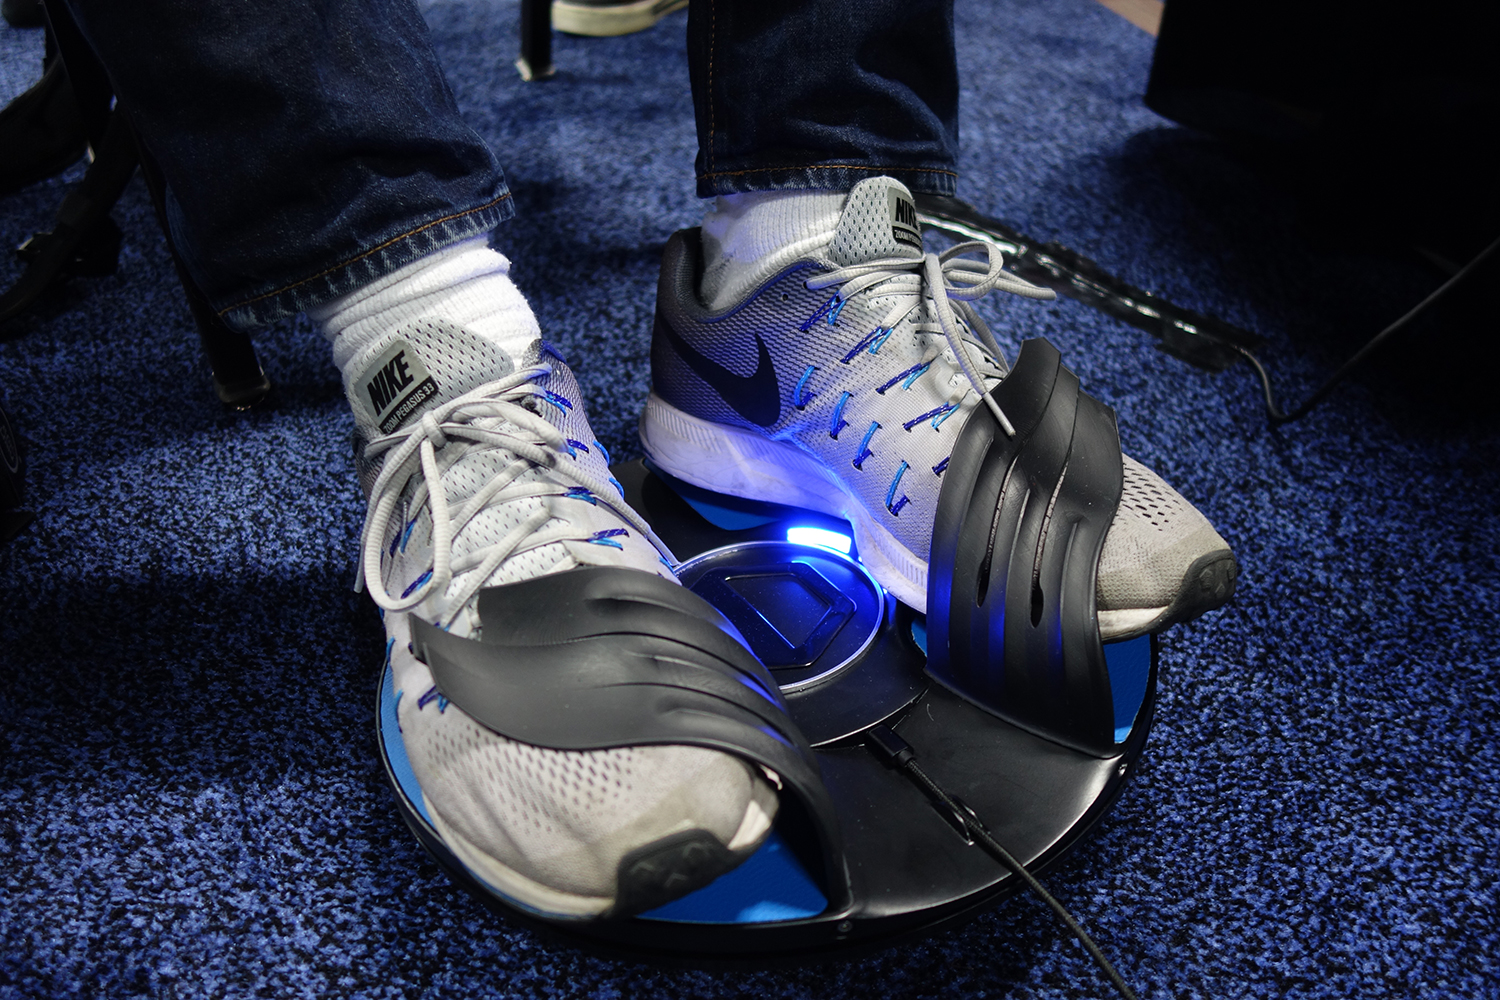 VR Innovations 3drudder shoes